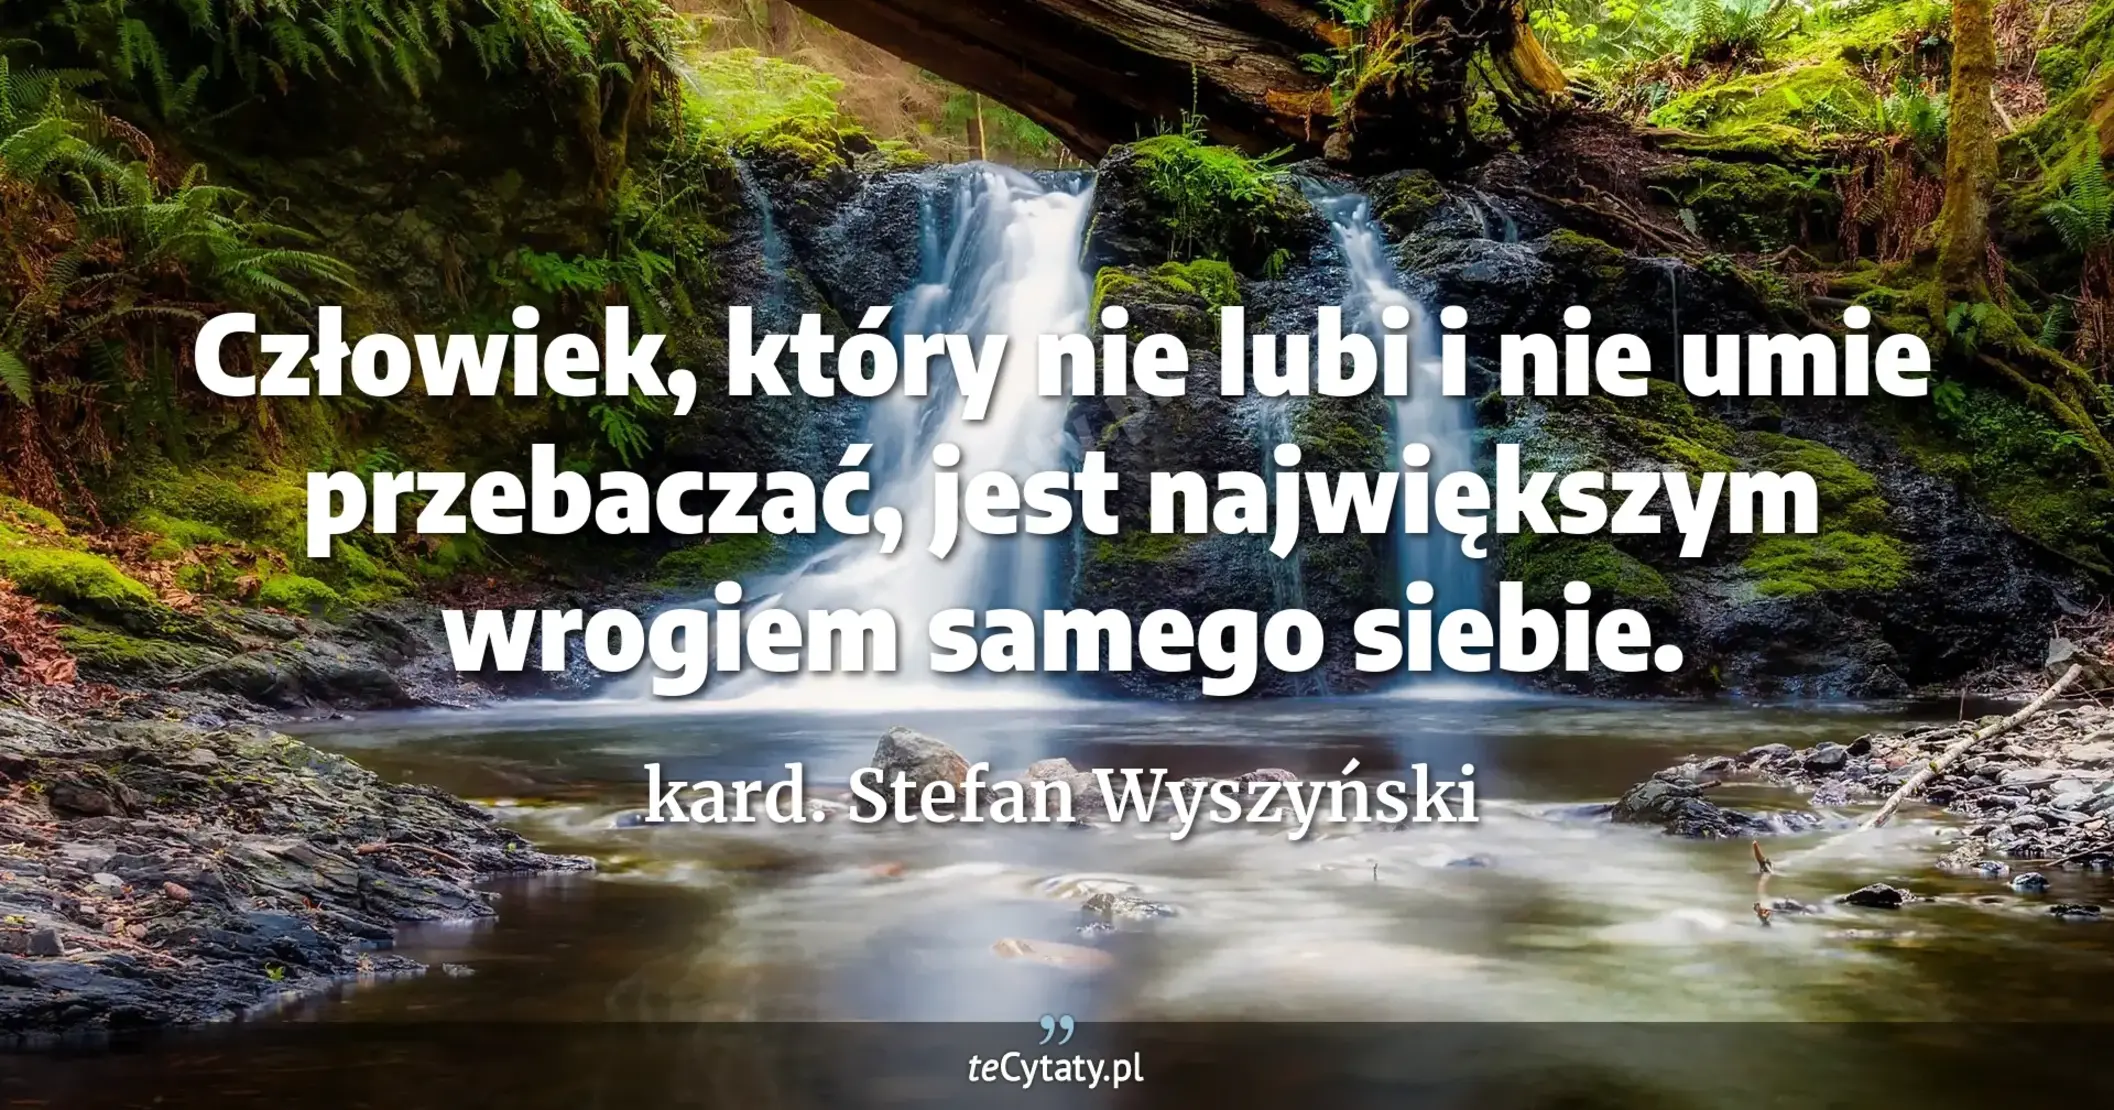 Człowiek, który nie lubi i nie umie przebaczać, jest największym wrogiem samego siebie. - kard. Stefan Wyszyński